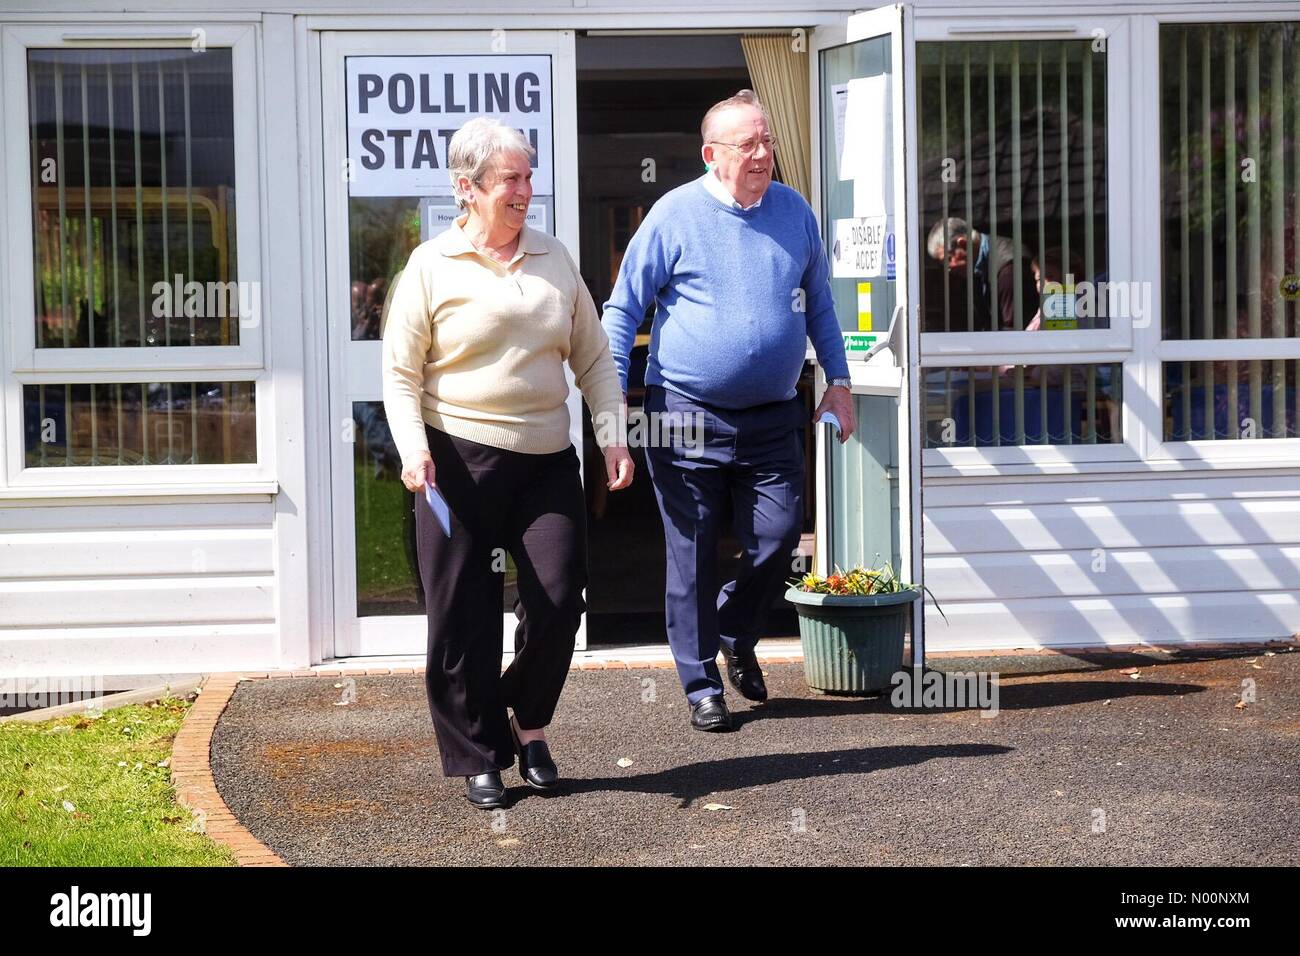 Elezioni locali UK - Worcester, Regno Unito - giovedì 3 maggio 2018 - Gli elettori arrivano alla casa Dancox stazione di polling per le elezioni locali oggi per Worcester City Council per un terzo dei seggi del Consiglio Foto Stock